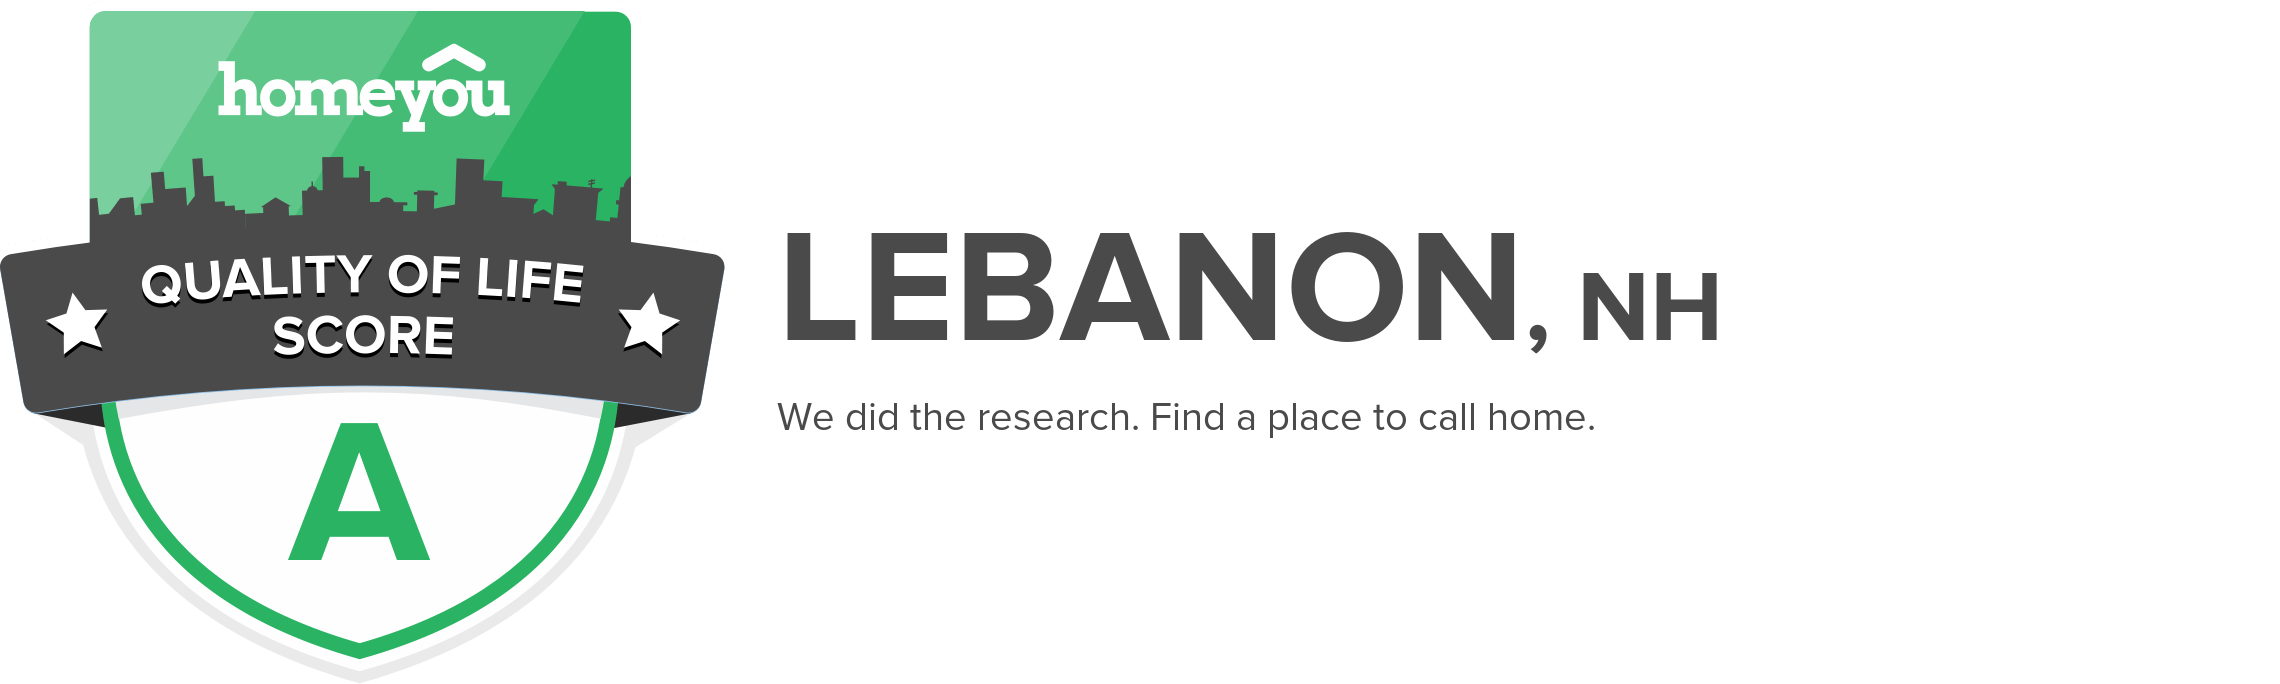 Lebanon, NH